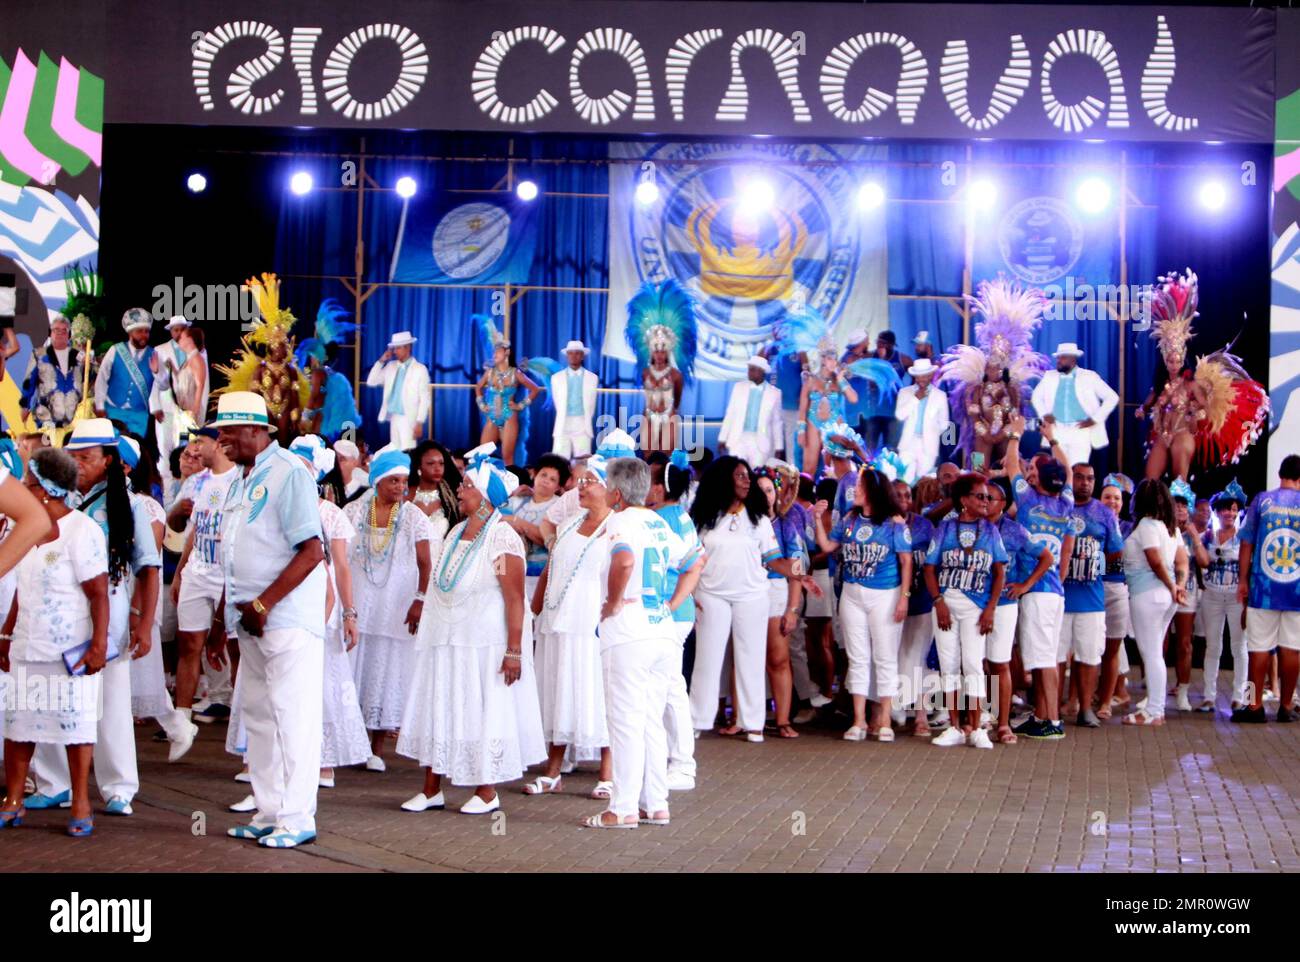 Technical Rehearsal Of The Unidos De Bangu Samba School In Rio De Janeiro  Brazil Stock Photo - Download Image Now - iStock